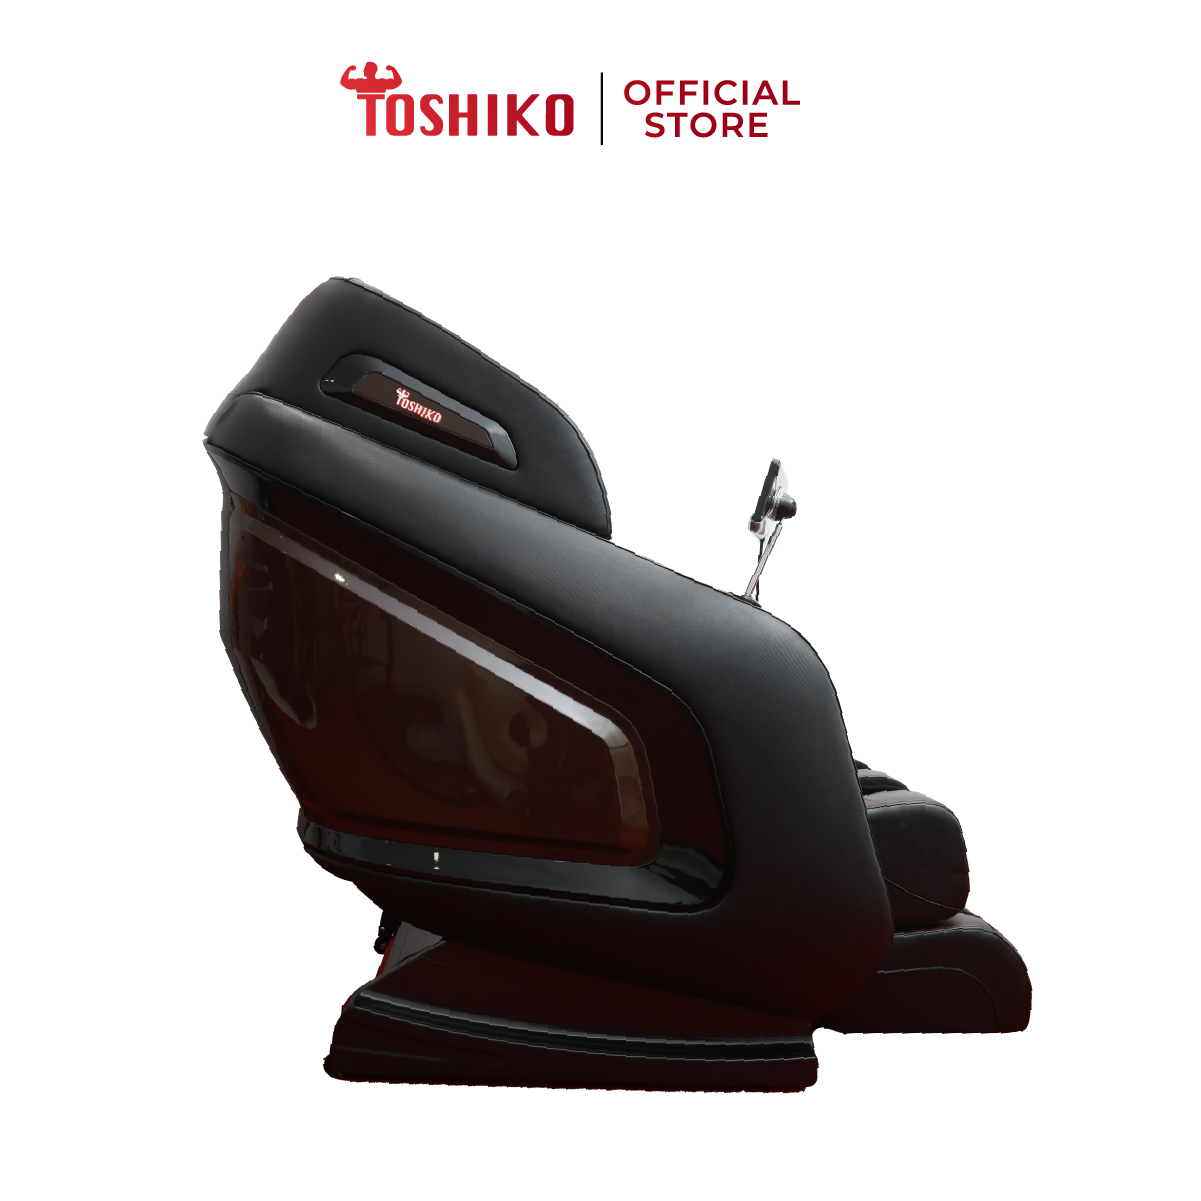 Ghế massage trị liệu toàn thân Toshiko T18 - bảo hàng 6 năm